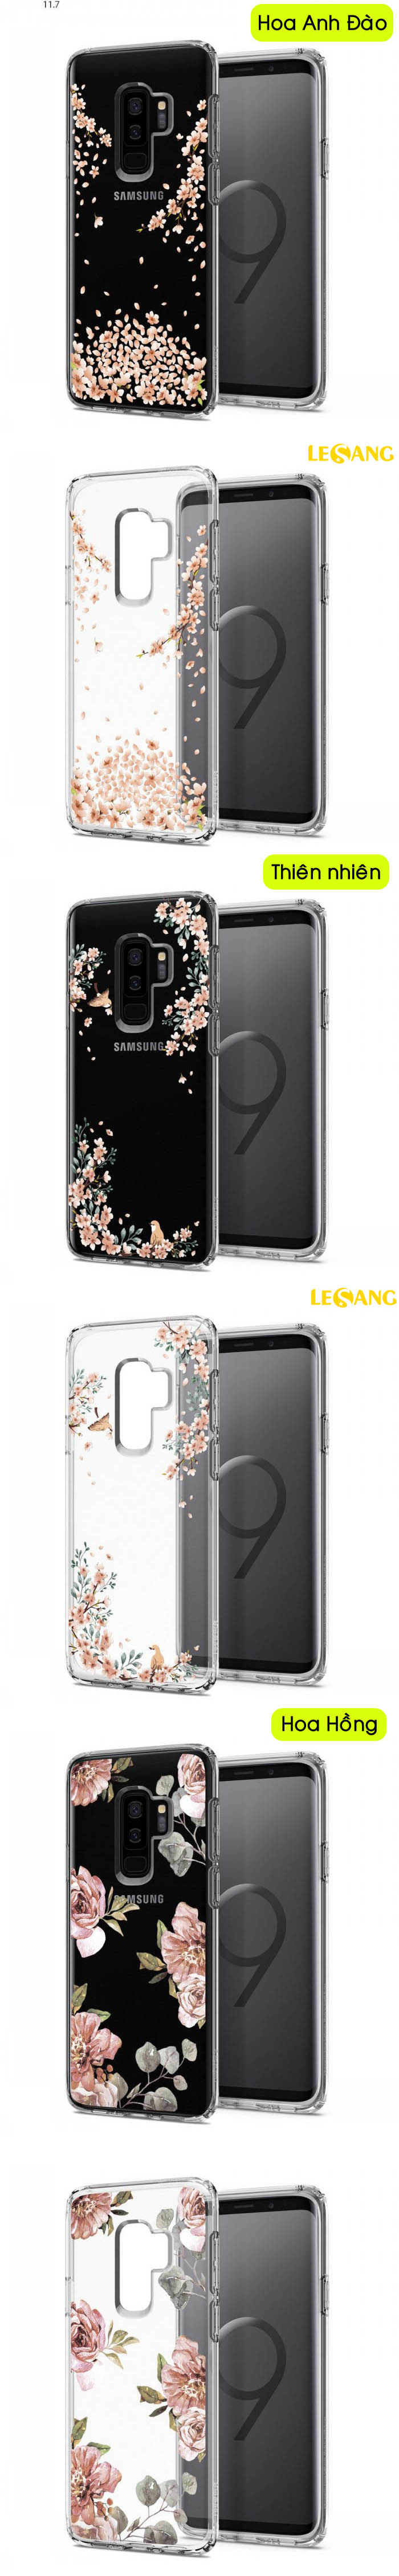 Ốp lưng Galaxy S9 Plus Spigen Liquid Crytal Blossom 33